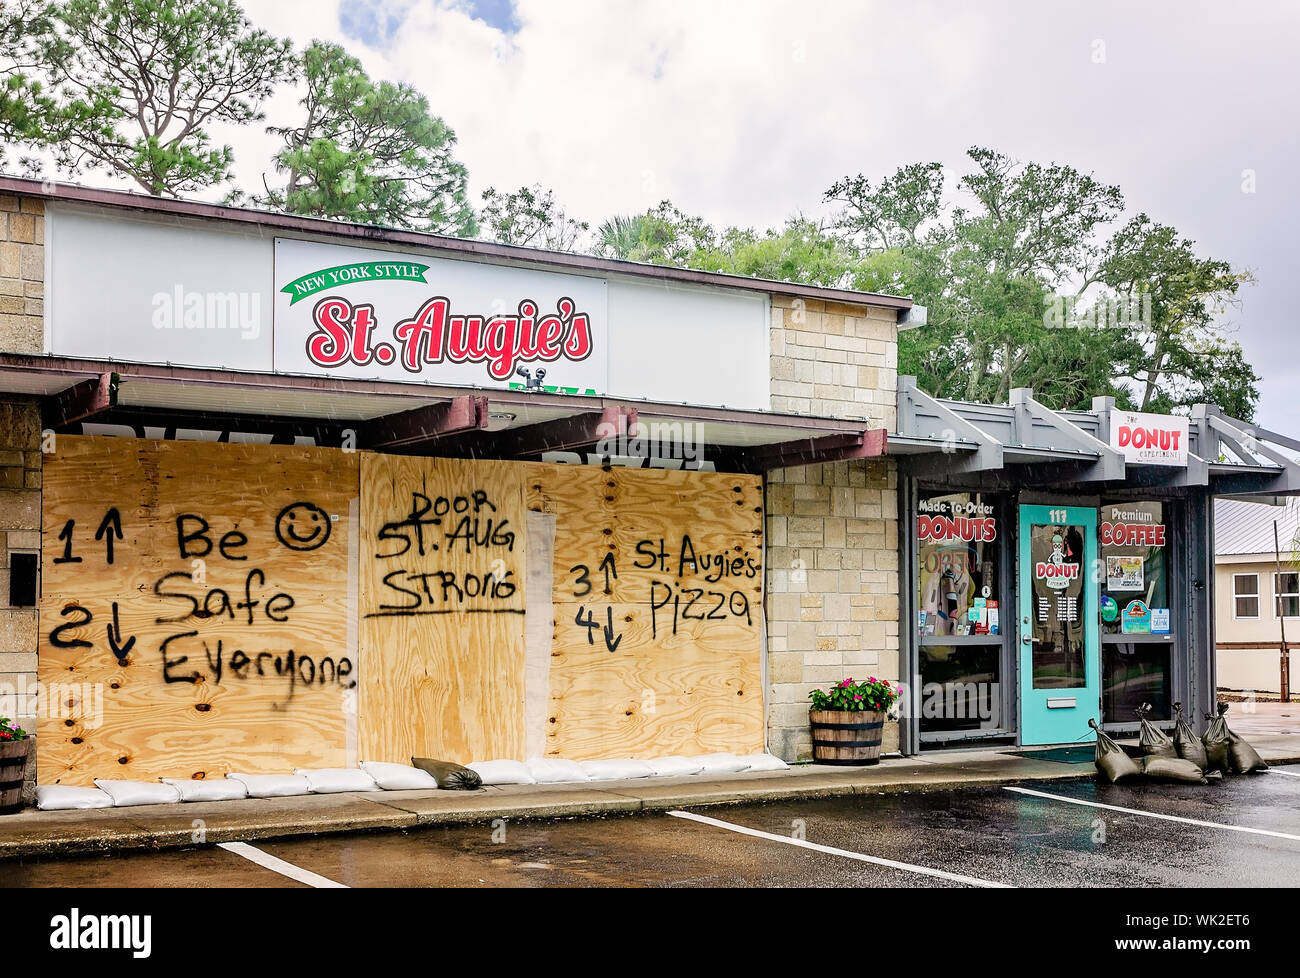 Saint Augie's Pizza est condamné avec du contreplaqué portant les messages, "être en sécurité tout le monde" et "St. Aug forte", 2 septembre 2019, à Saint Augustine, en Floride. Banque D'Images